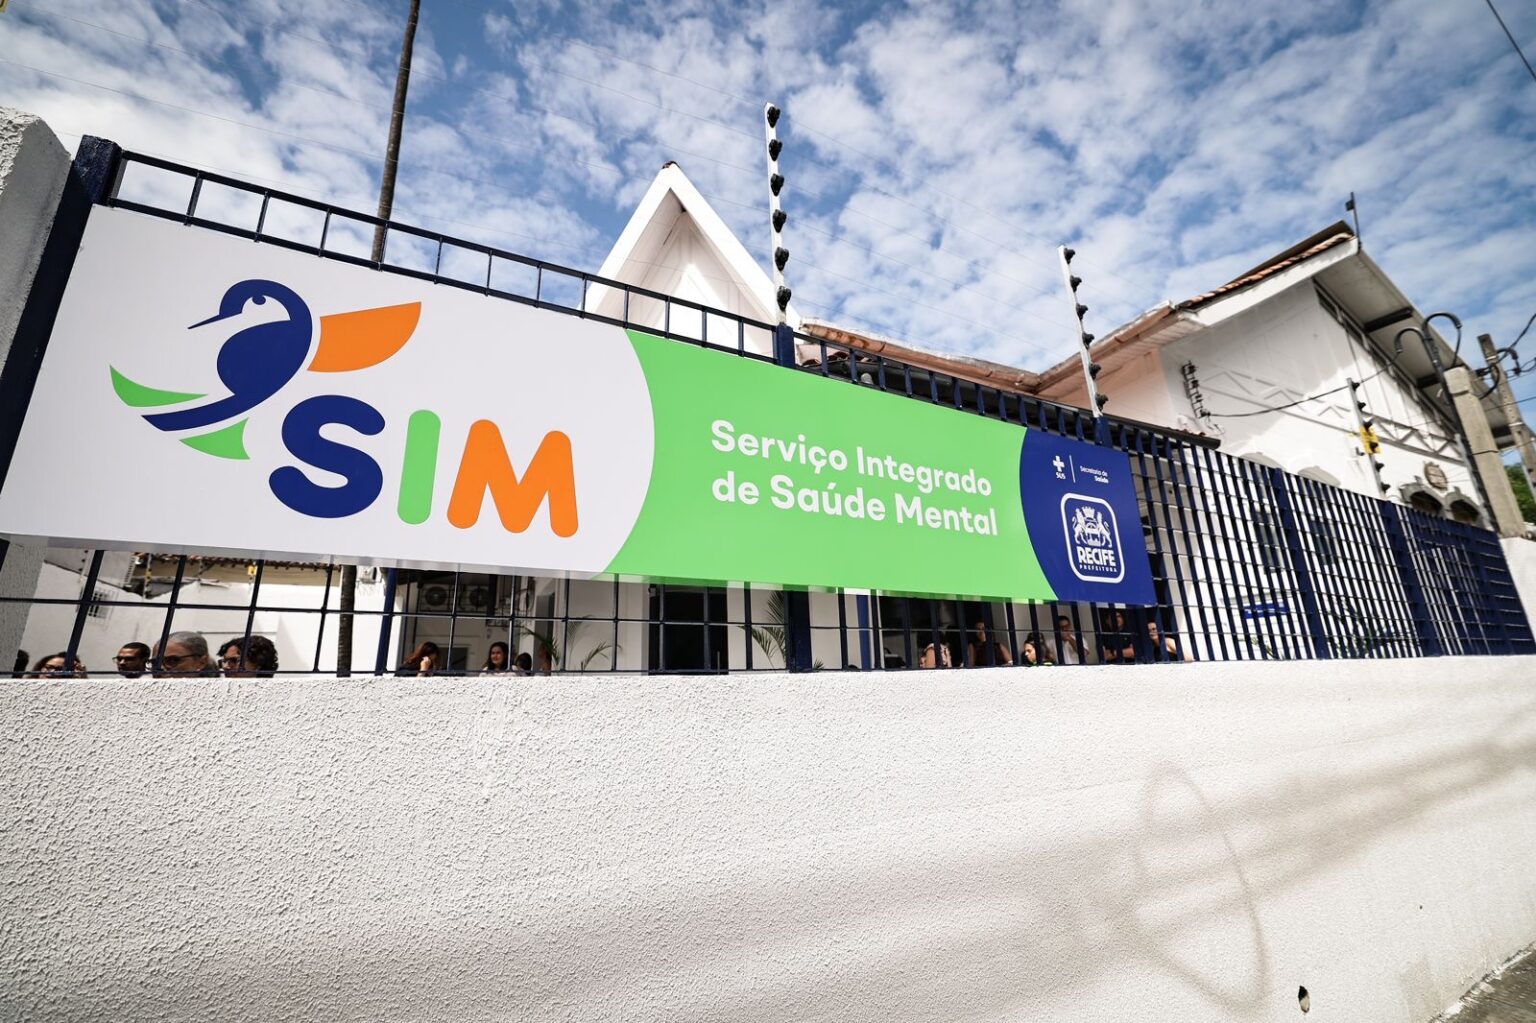  Prefeitura do Recife inaugura o Serviço Integrado de Saúde Mental (SIM) com investimento de R$ 422 mil